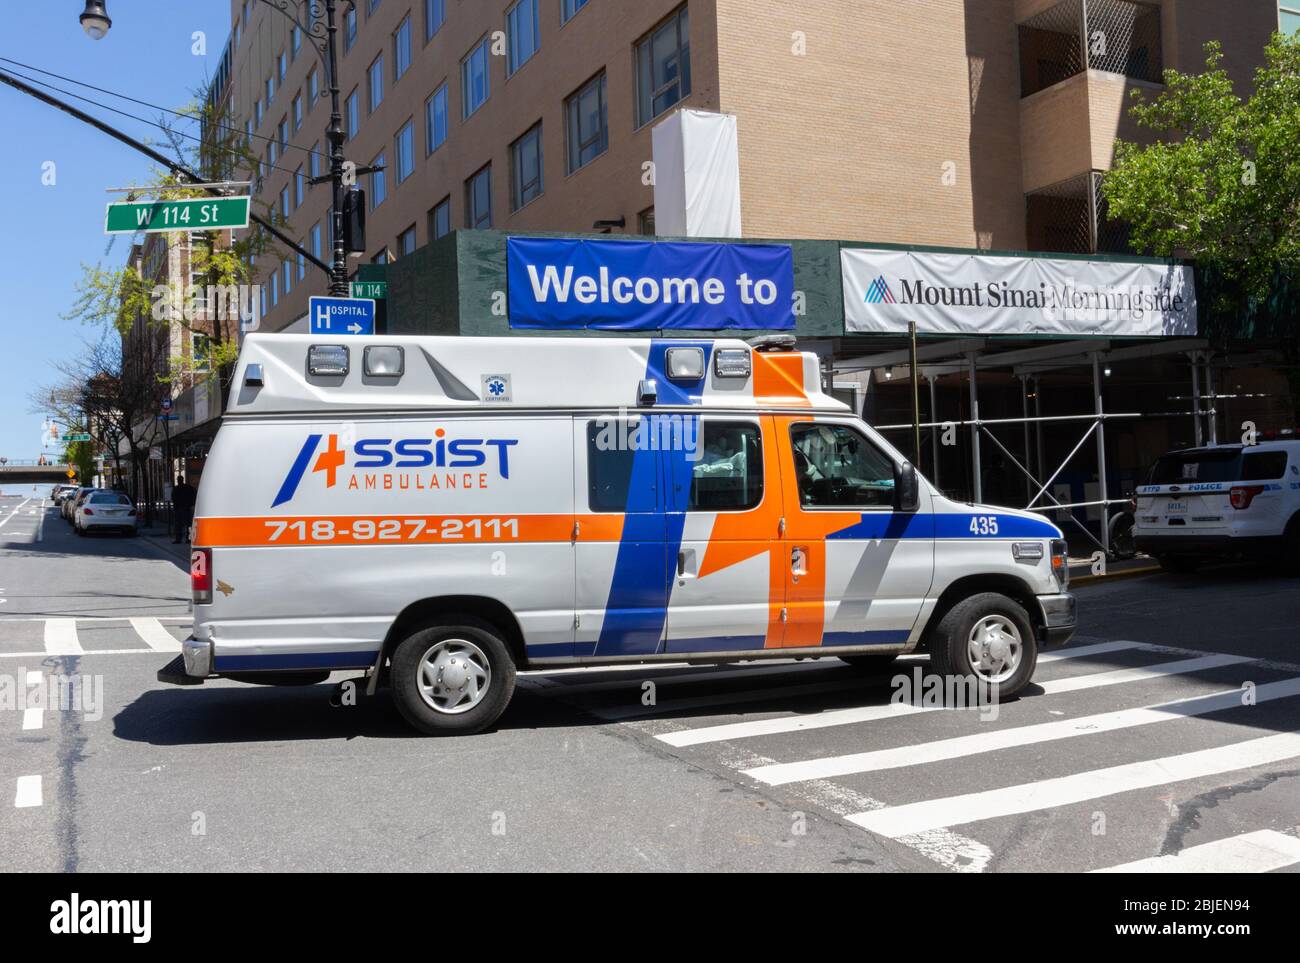 Ein Krankenwagen, der zu einem privaten Notdienst namens Assist Ambulance Services gehört, der vor dem Berg Sinai Morningside Heights steht Stockfoto